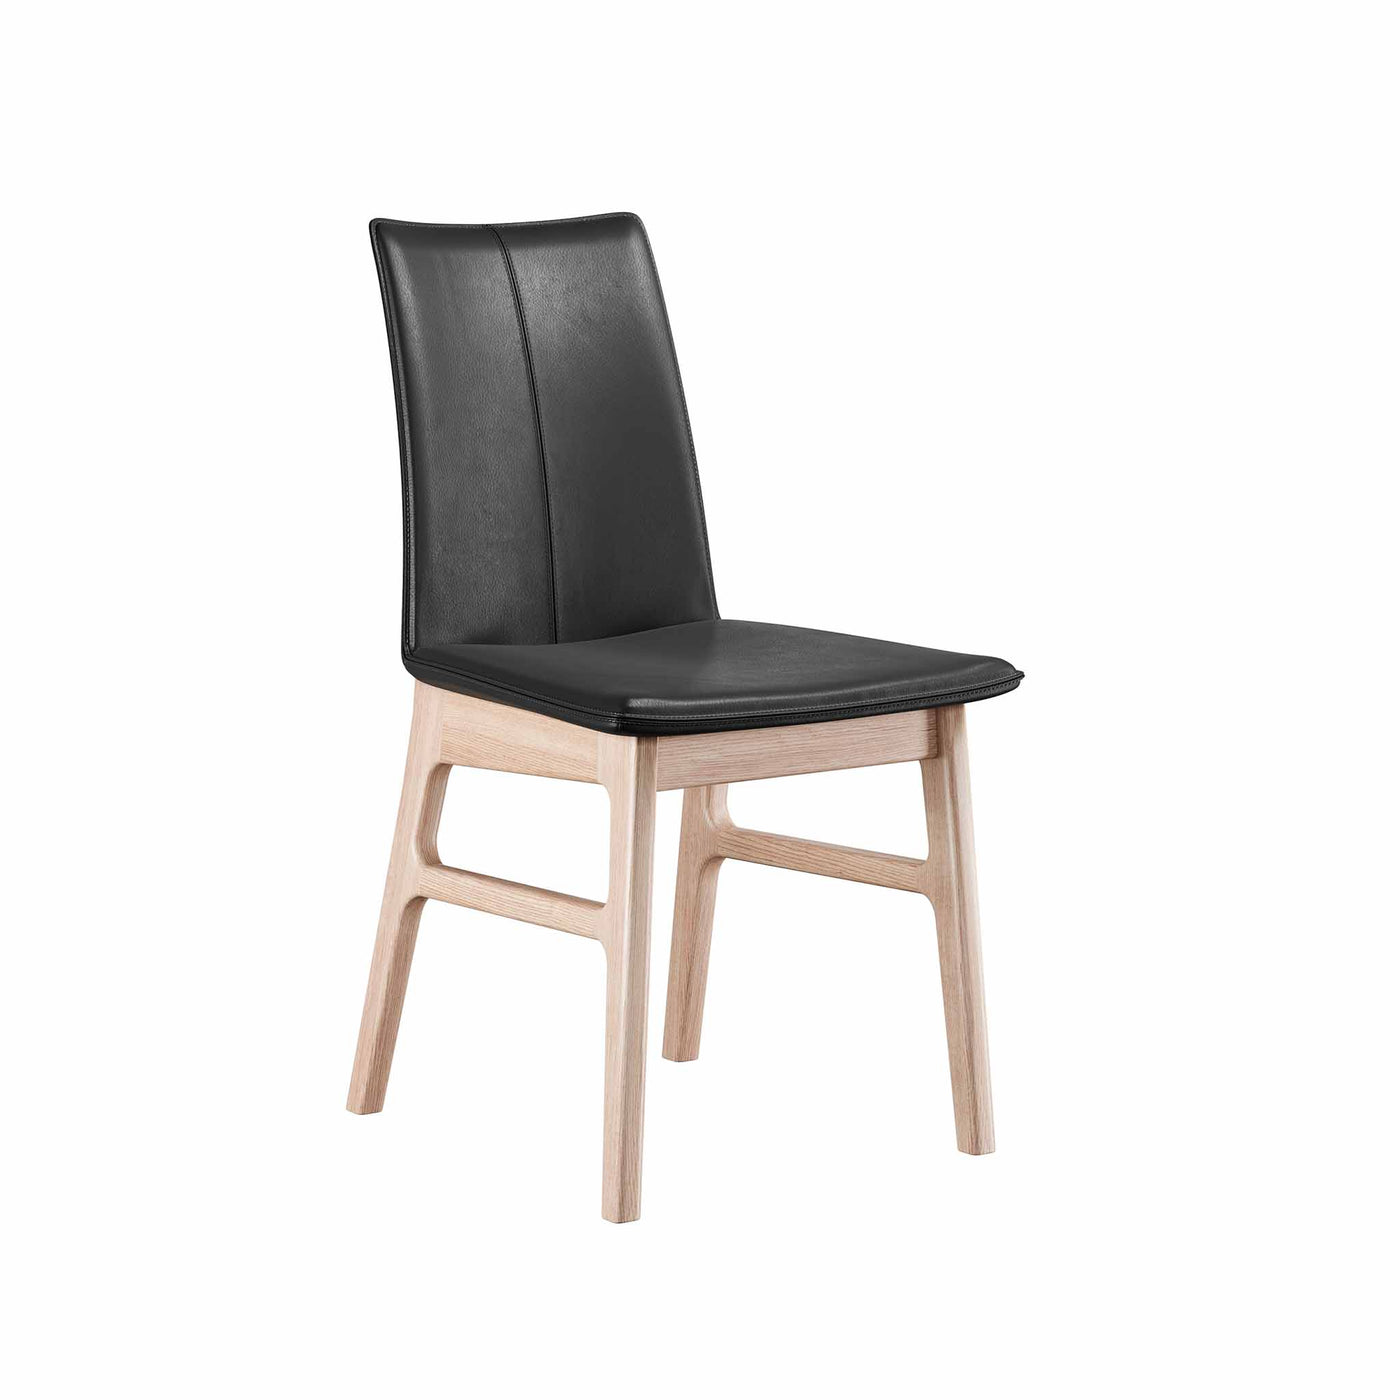 Sweetseat spisebordsstol med sort læder sæde og ben i hvidolieret eg fra Casø Furniture